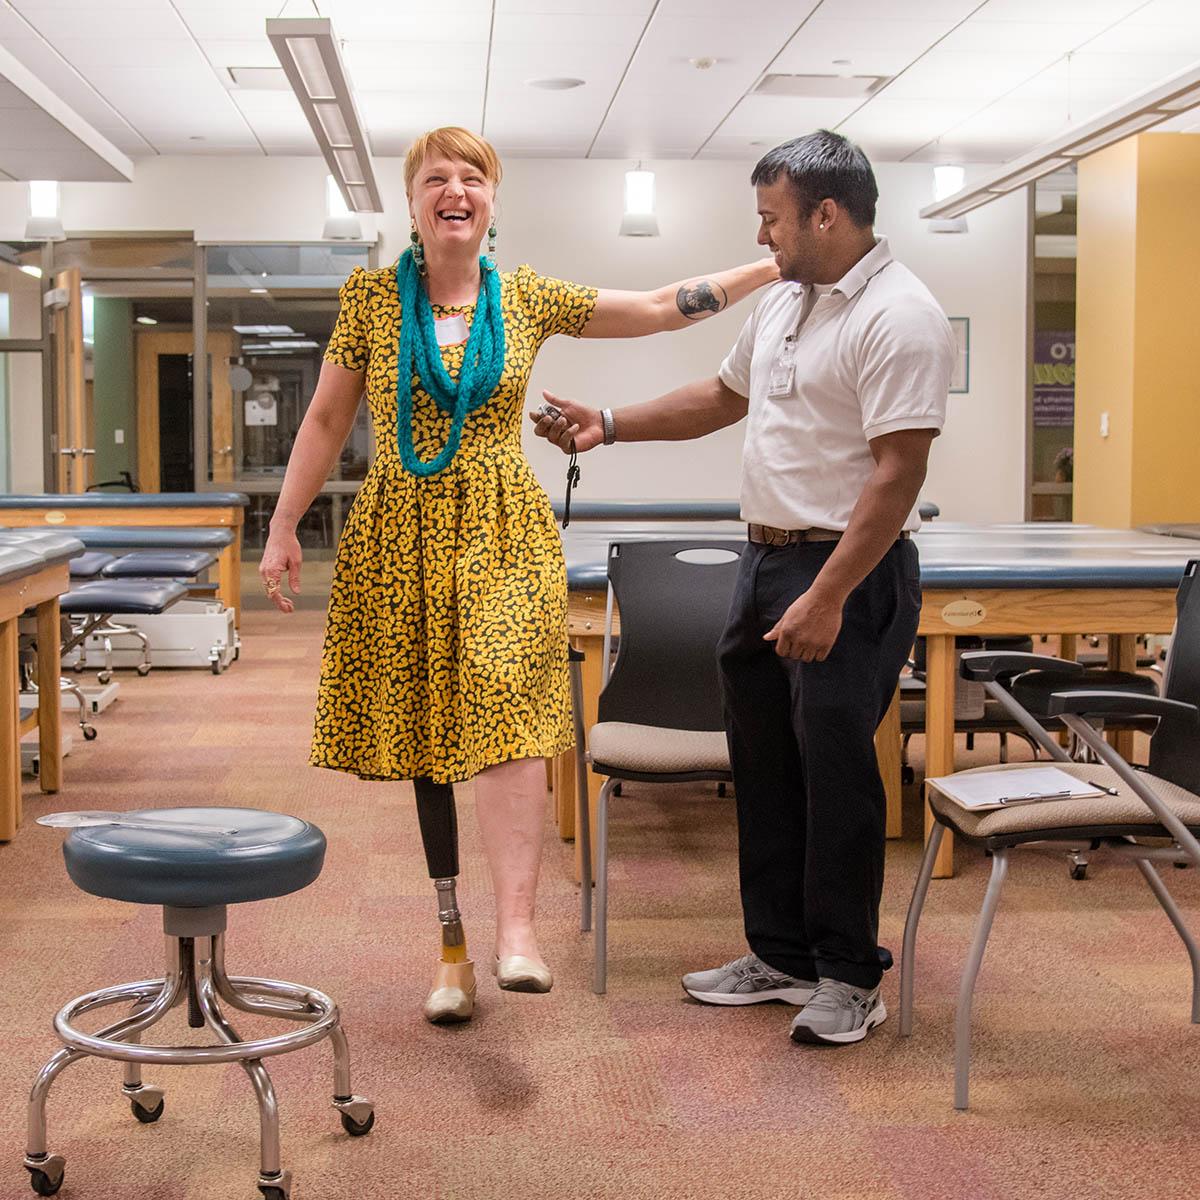 图为一名查塔姆物理治疗专业的学生在帮助一名女性截肢者试穿新的义肢